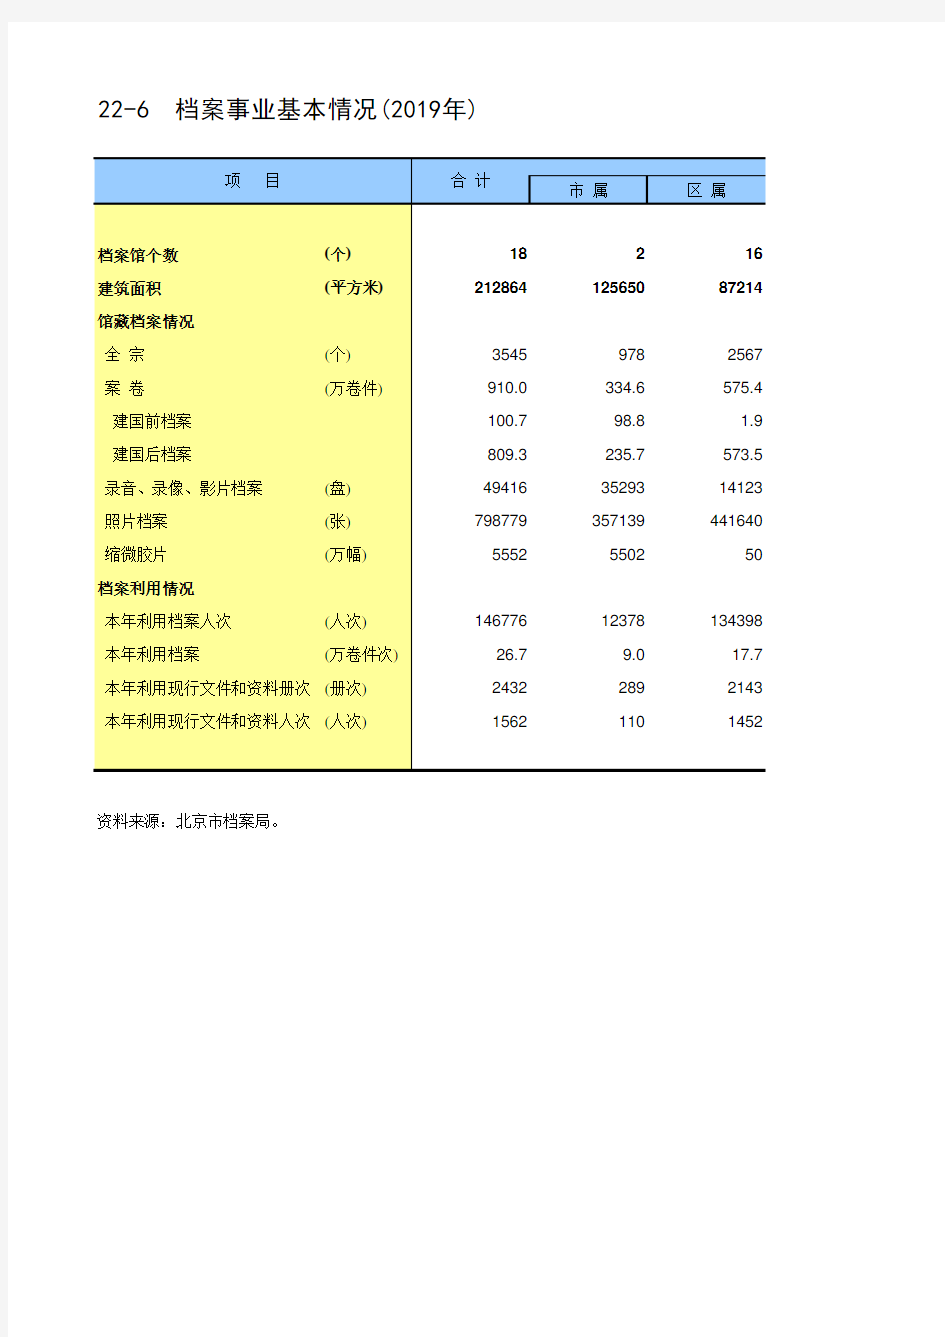 北京统计年鉴2020各区社会经济发展指标：档案事业基本情况(2019年)